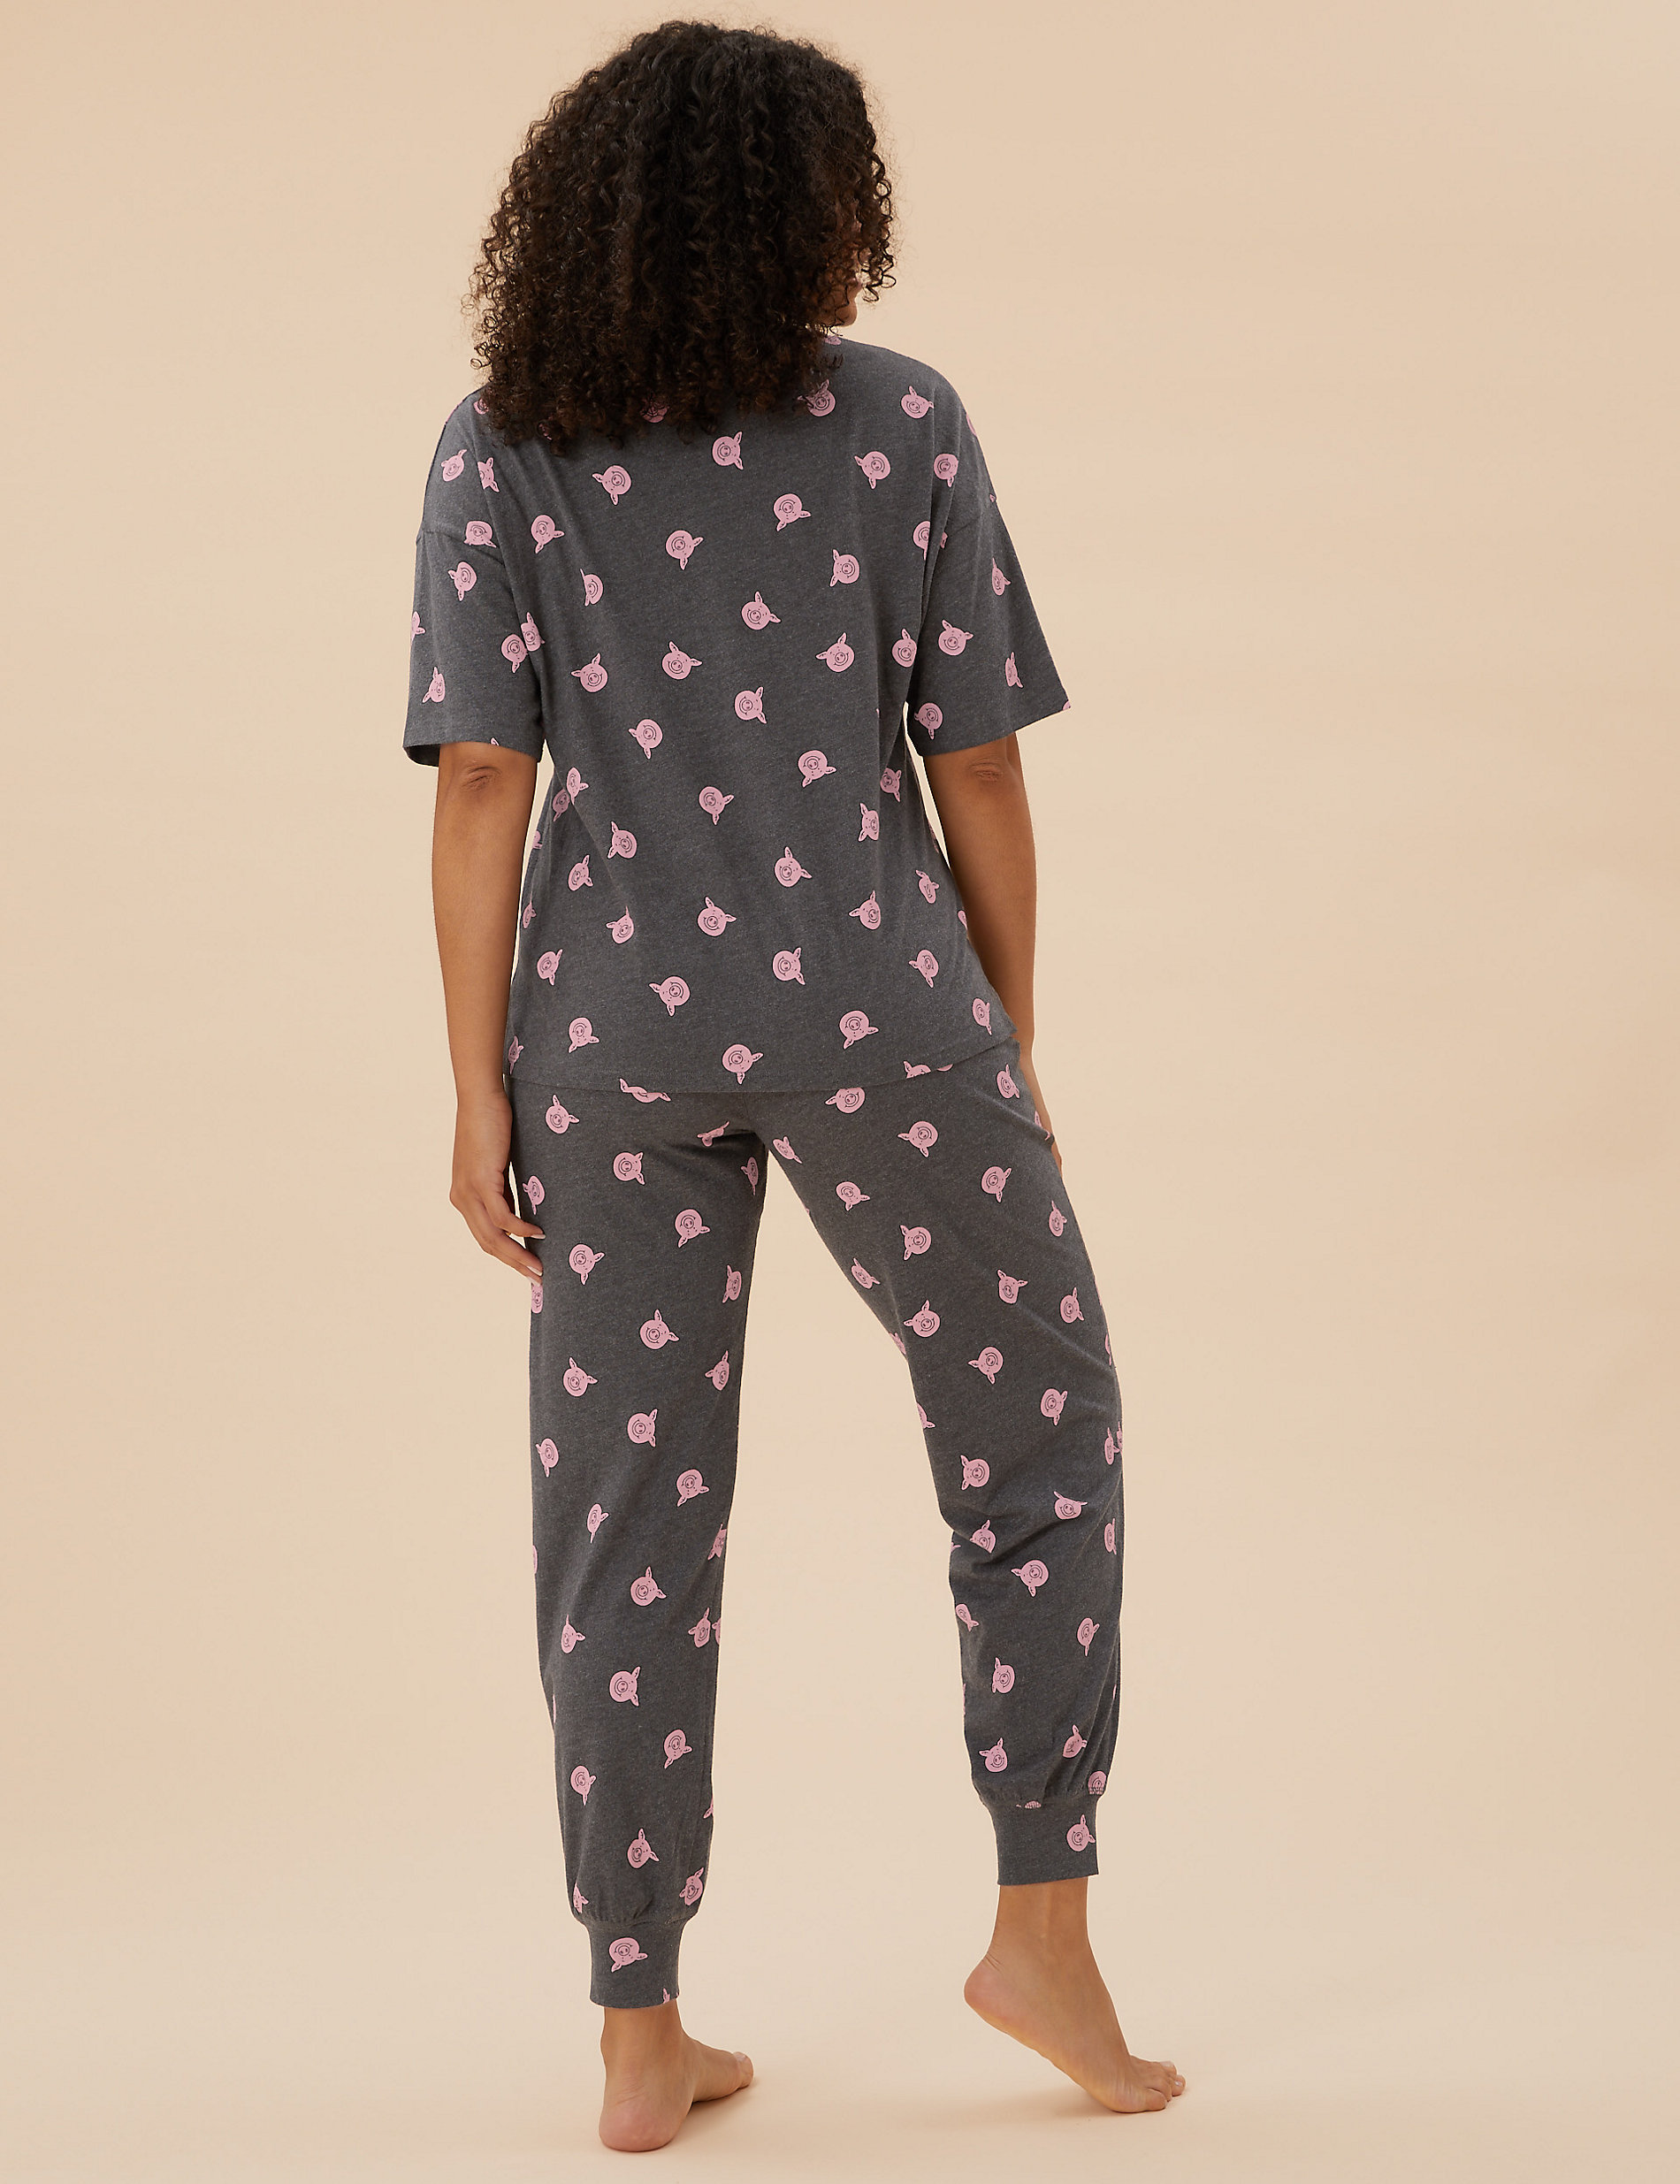 4 Filles Wonder Kids Footed Pj Pyjama 4 T Bébé Couverture Lit Nuit Vêtements